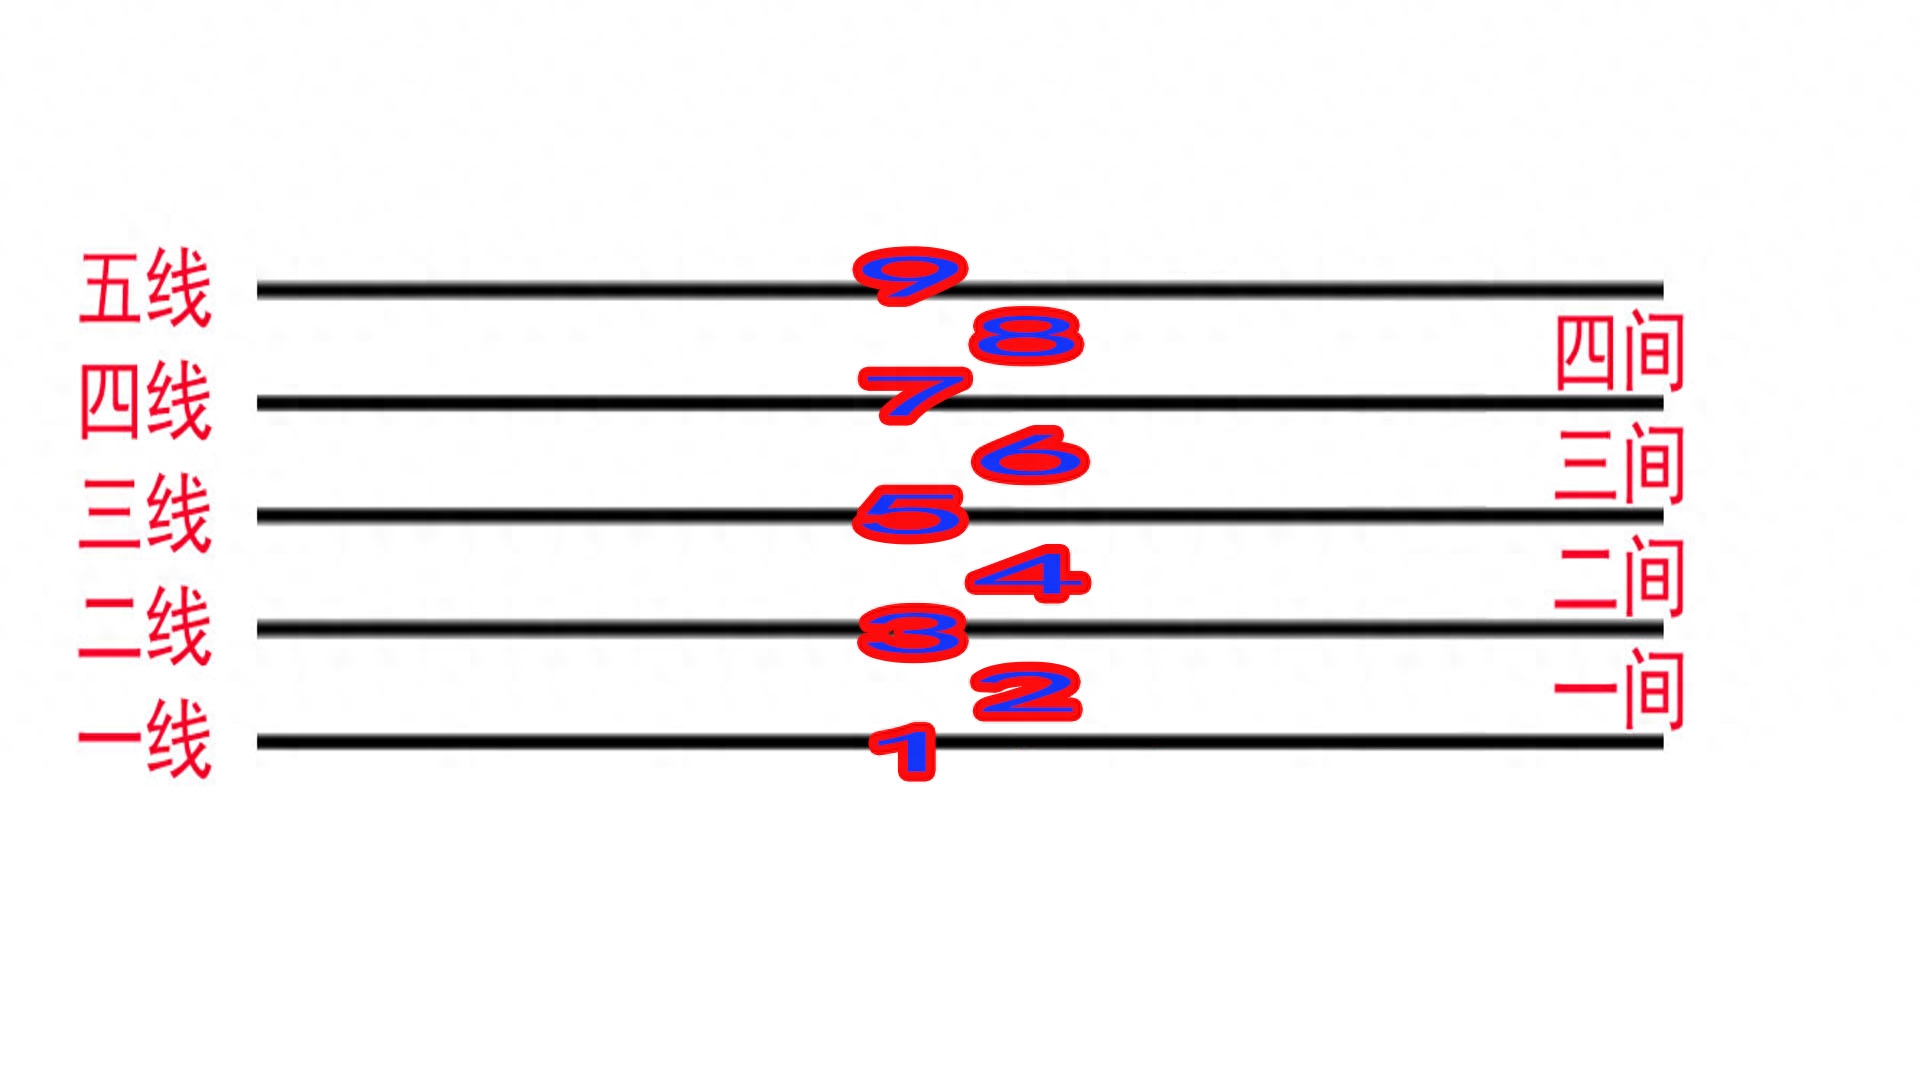 五线谱中的各种符号图解_图解符号五线谱中有一竖线_五线谱中符号的意思